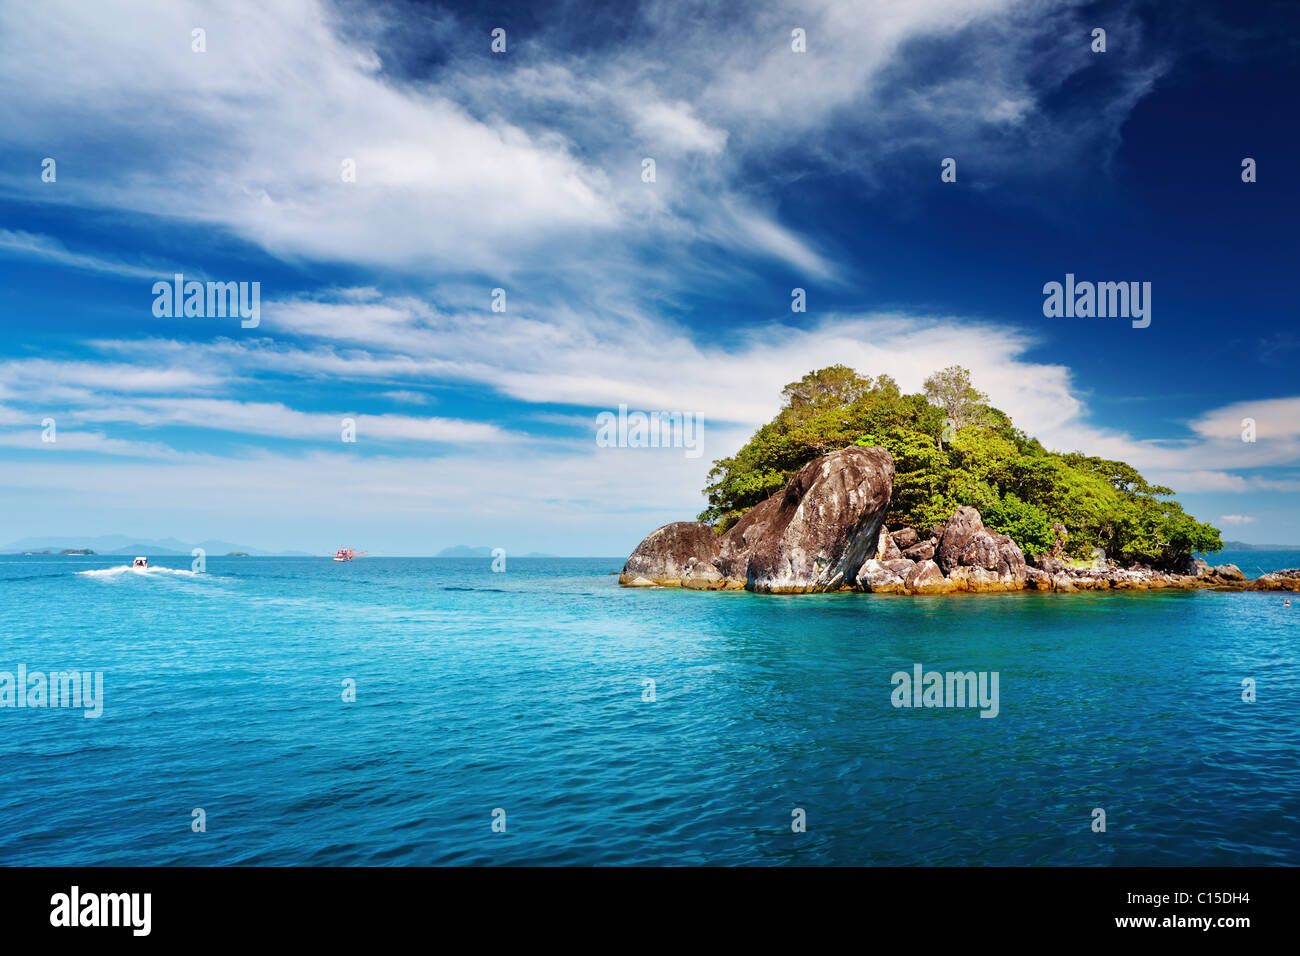 El archipiélago de islas tropicales, Trat, Tailandia Foto de stock